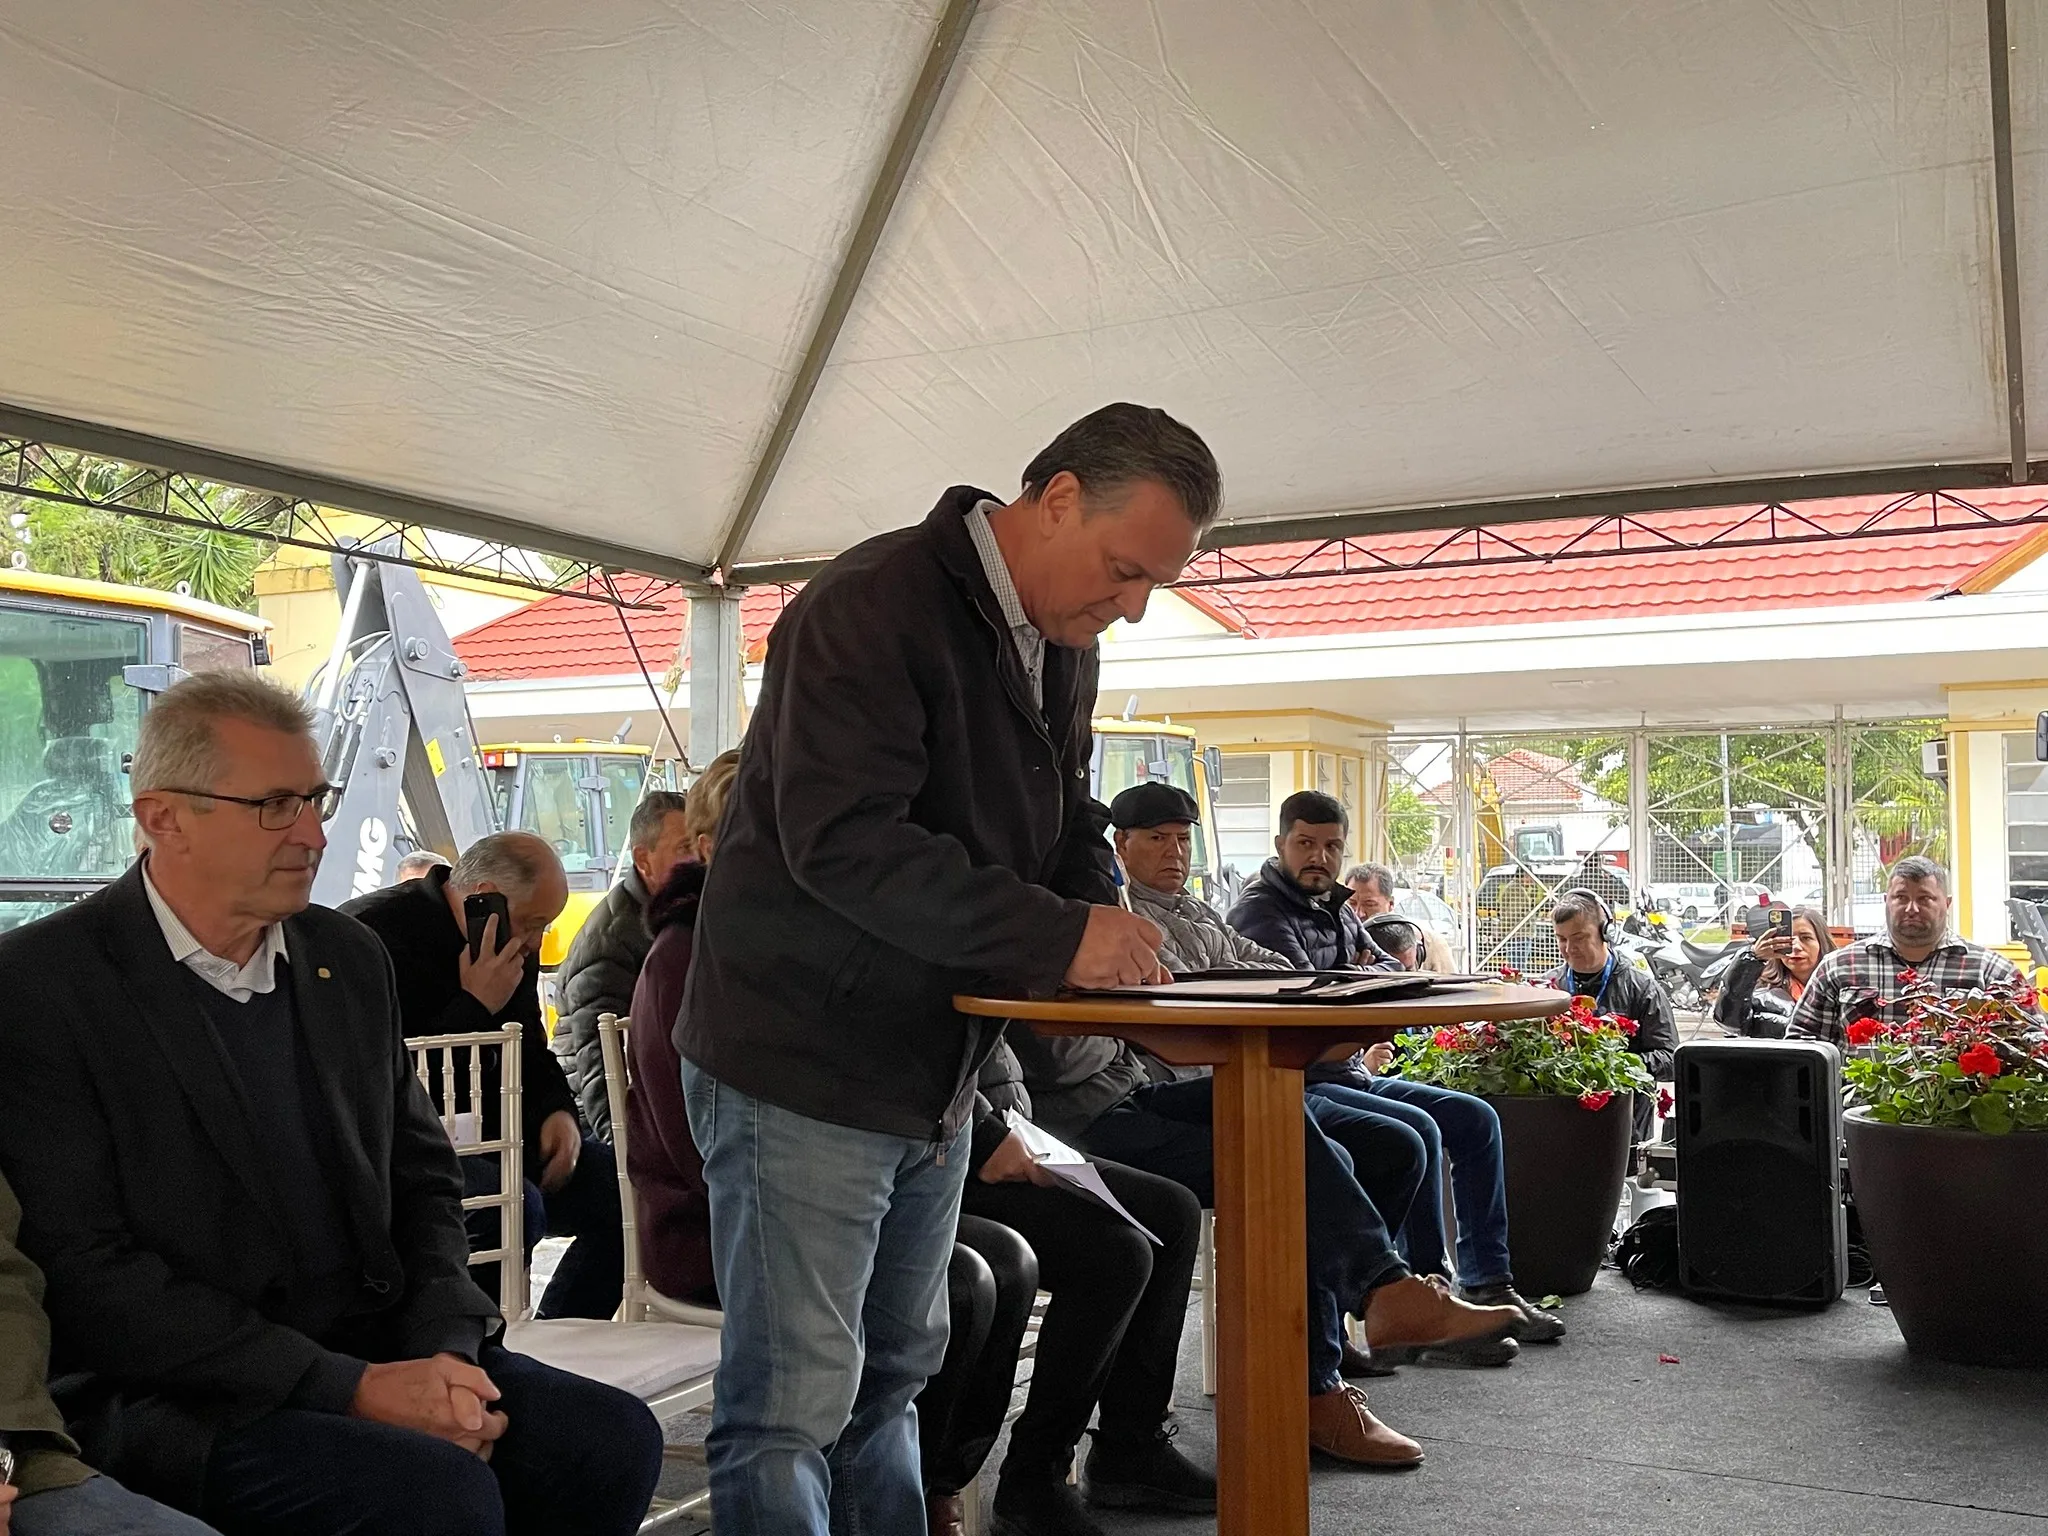 Foto de ministro Carlos Fávaro em pé enquanto assina papéis que estão sobre uma mesa. Ele está embaixo de uma lona de plástico e várias pessoas estão sentadas atrás dele.